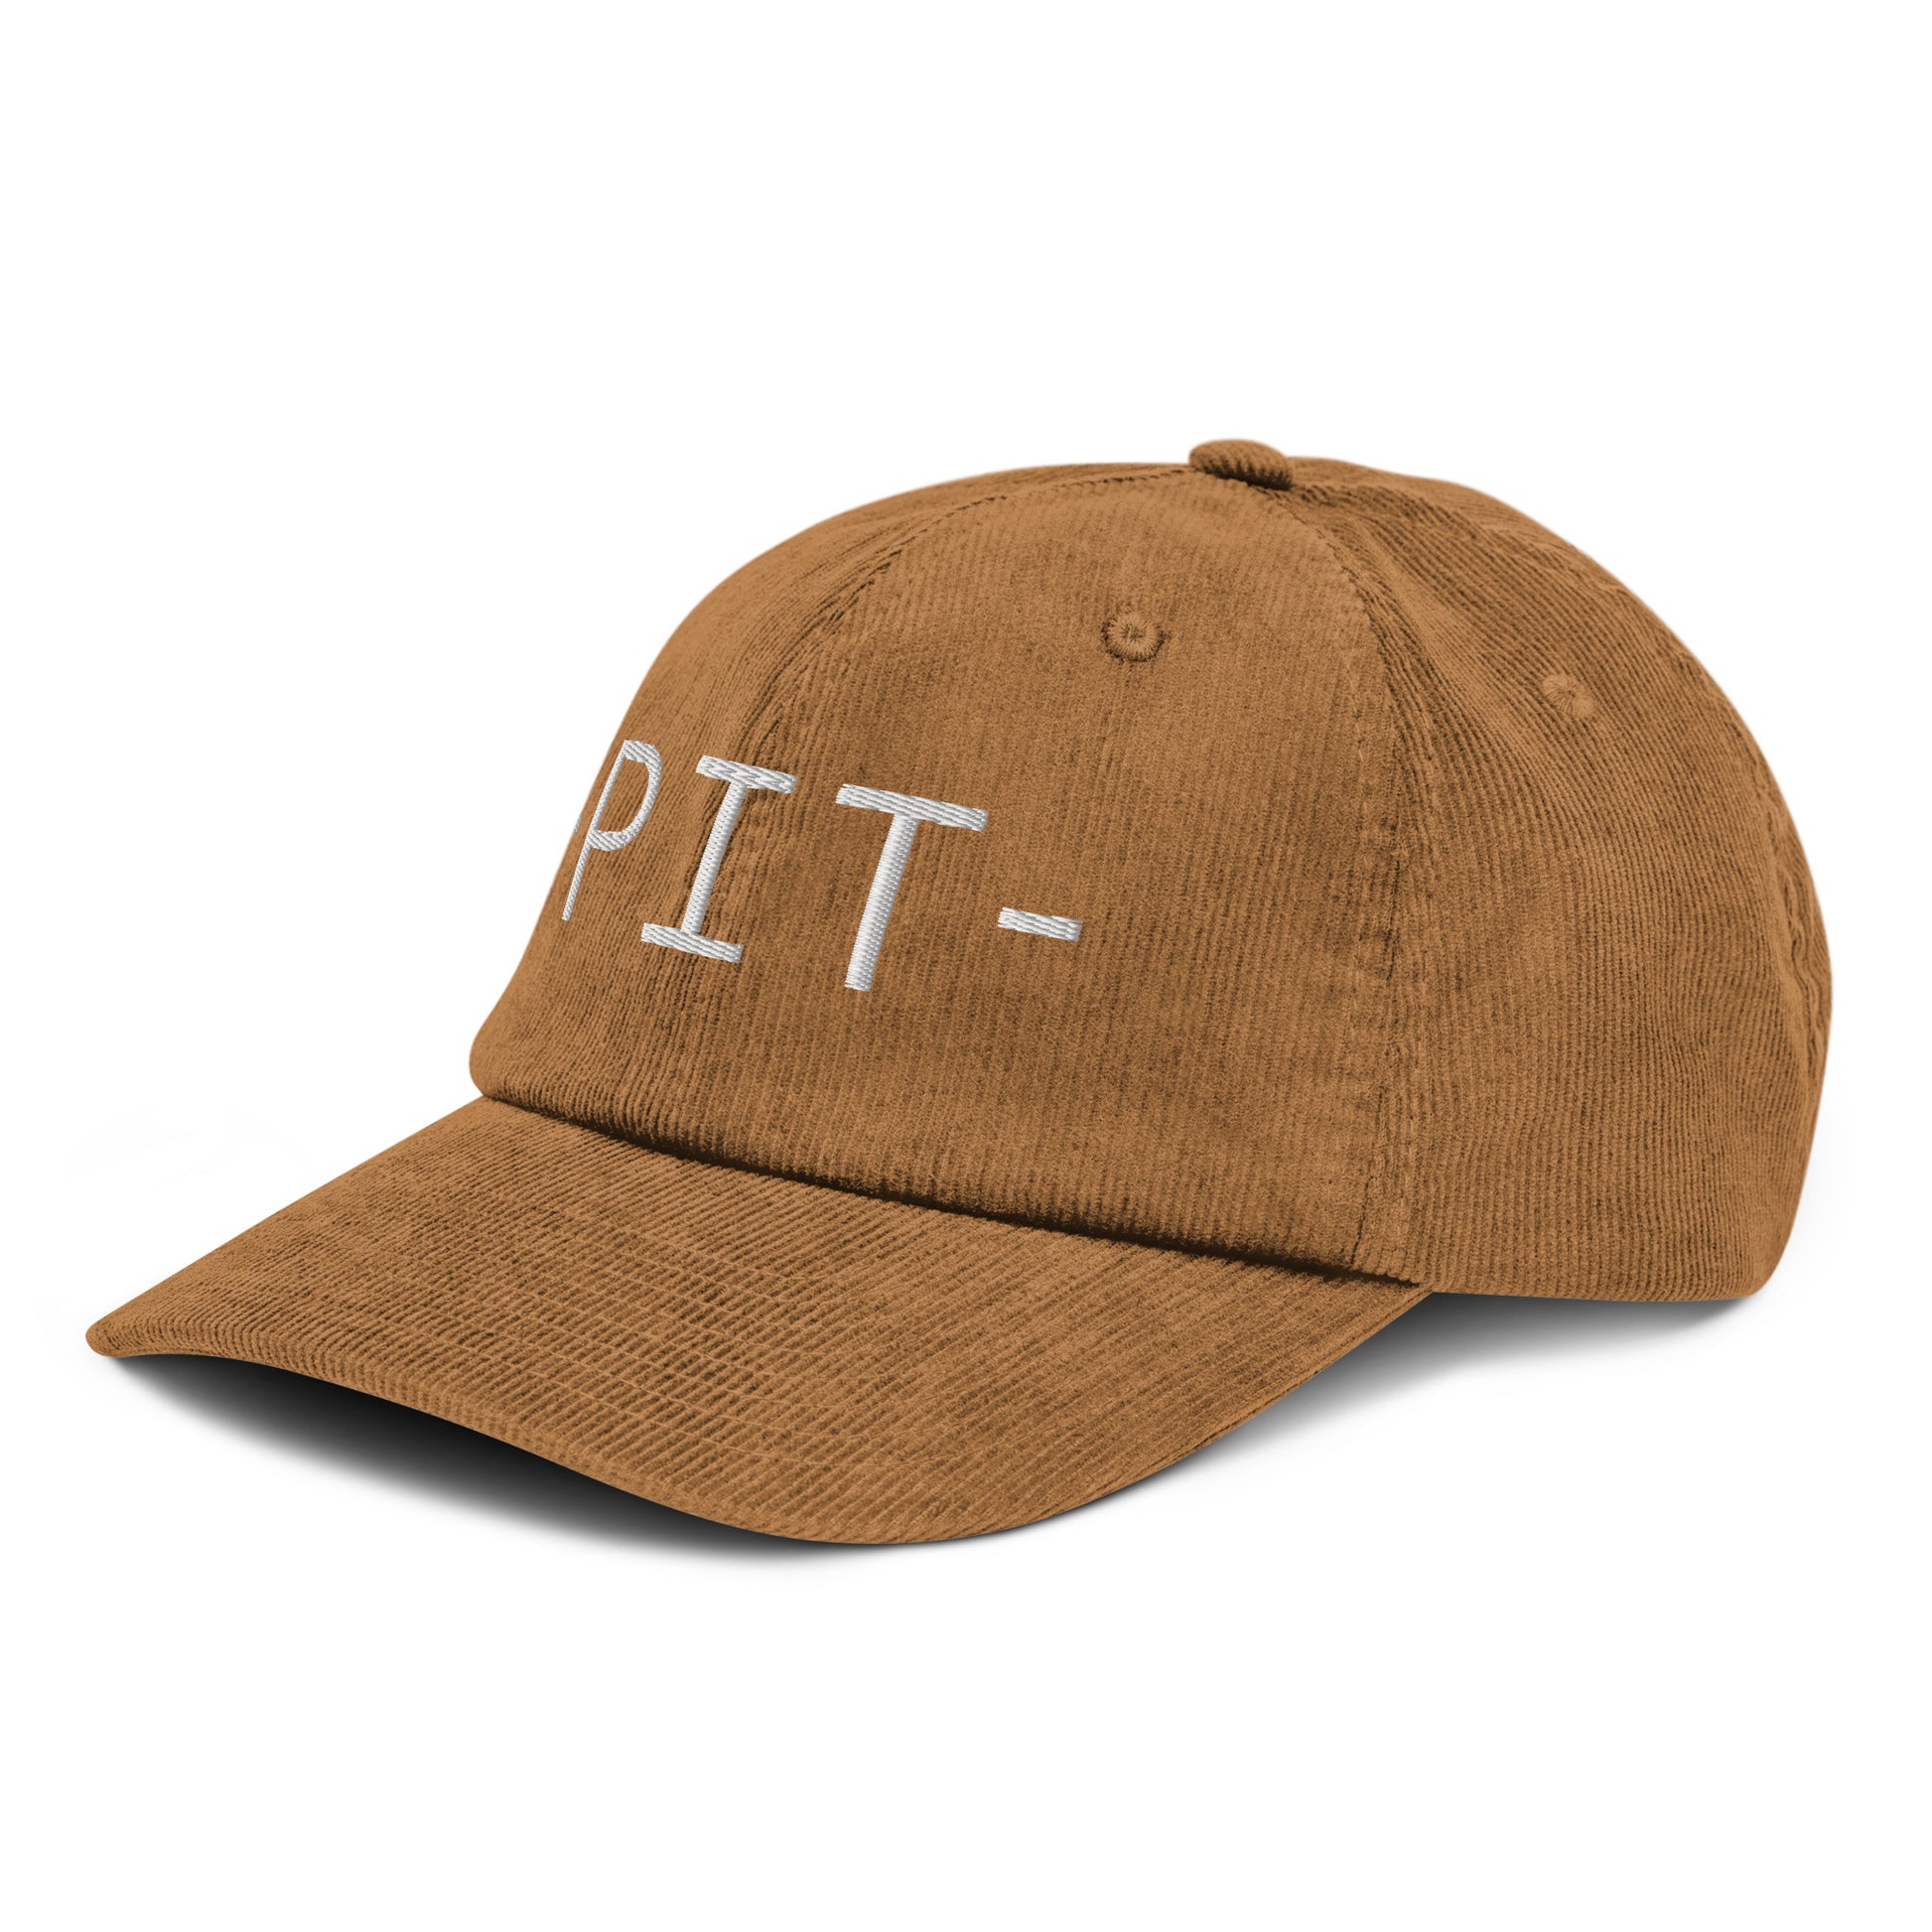 Souvenir Corduroy Hat - White • PIT Pittsburgh • YHM Designs - Image 19